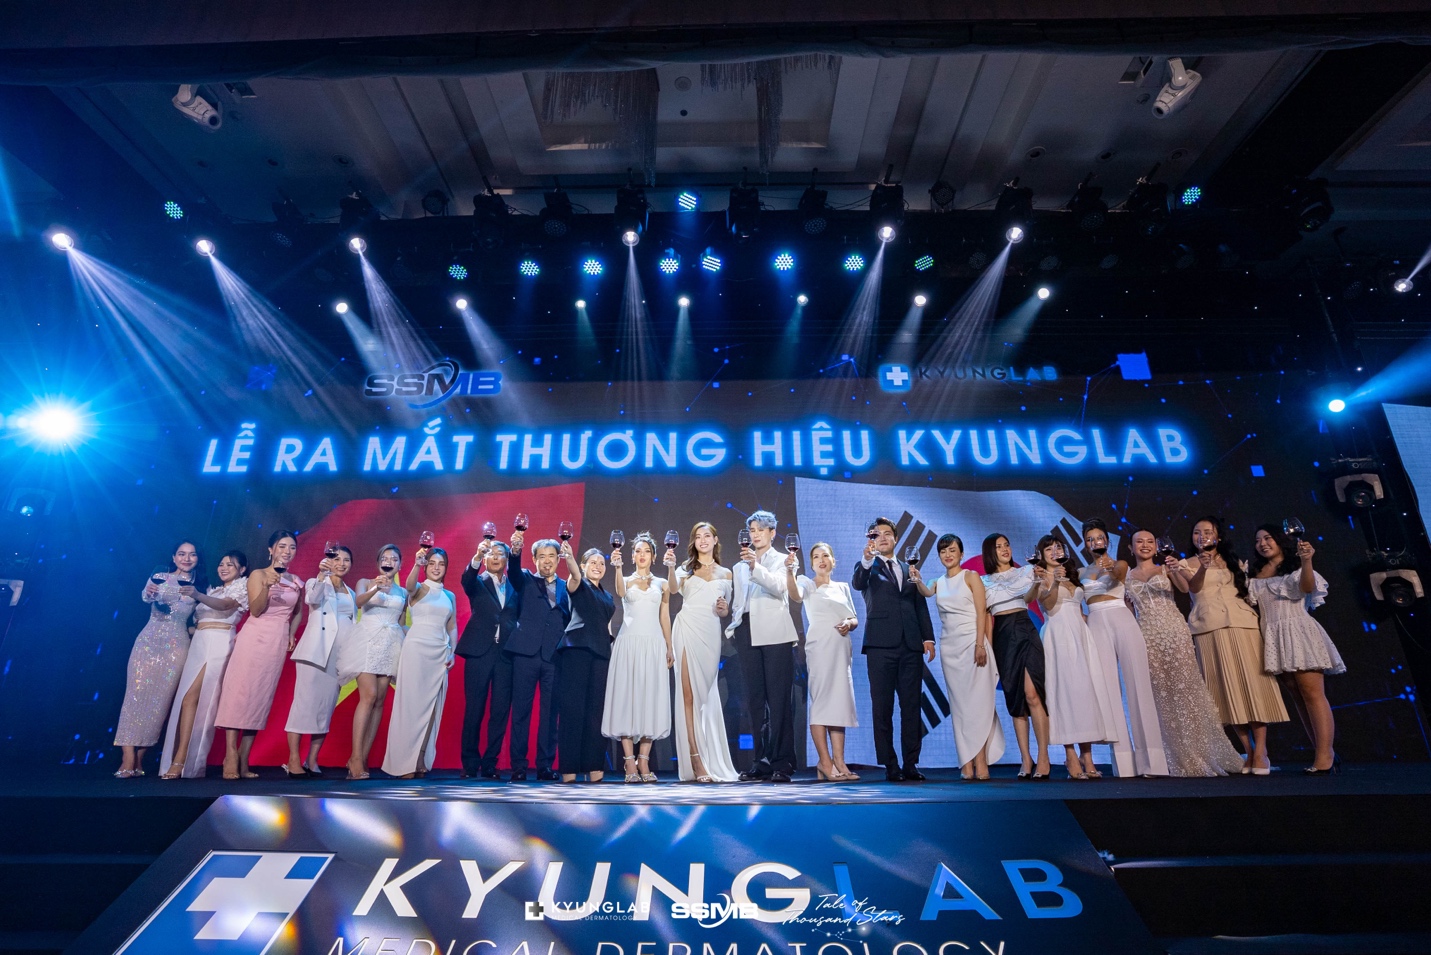 Lương Thuỳ Linh hội tụ dàn sao Việt tại lễ ra mắt thương hiệu KyungLab - Ảnh 5.